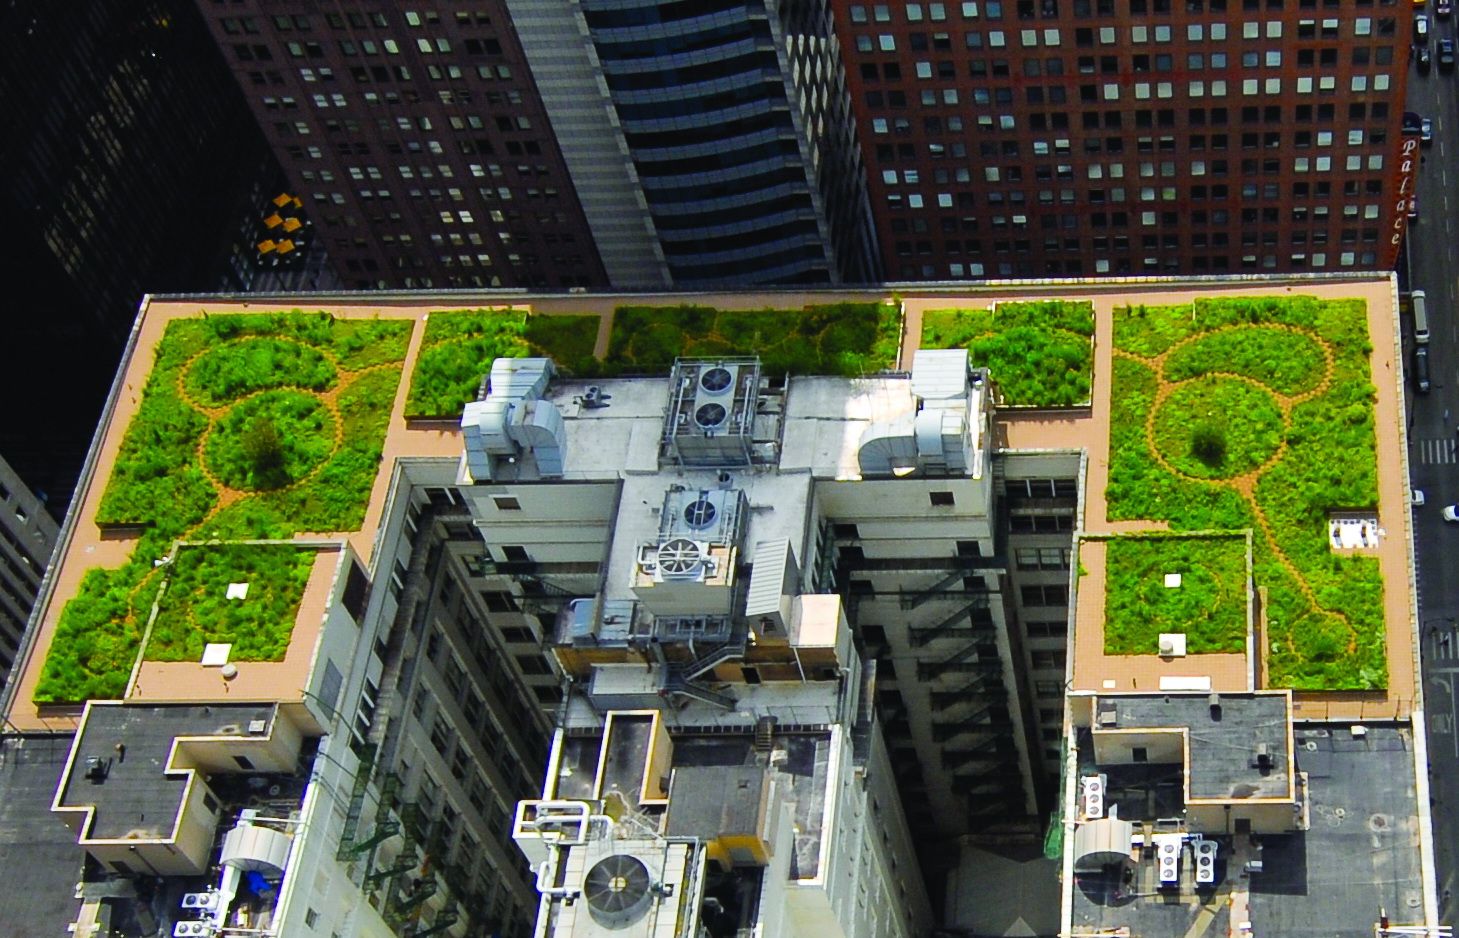 City Hall Rooftop Garden: зеленая крыша в Чикаго